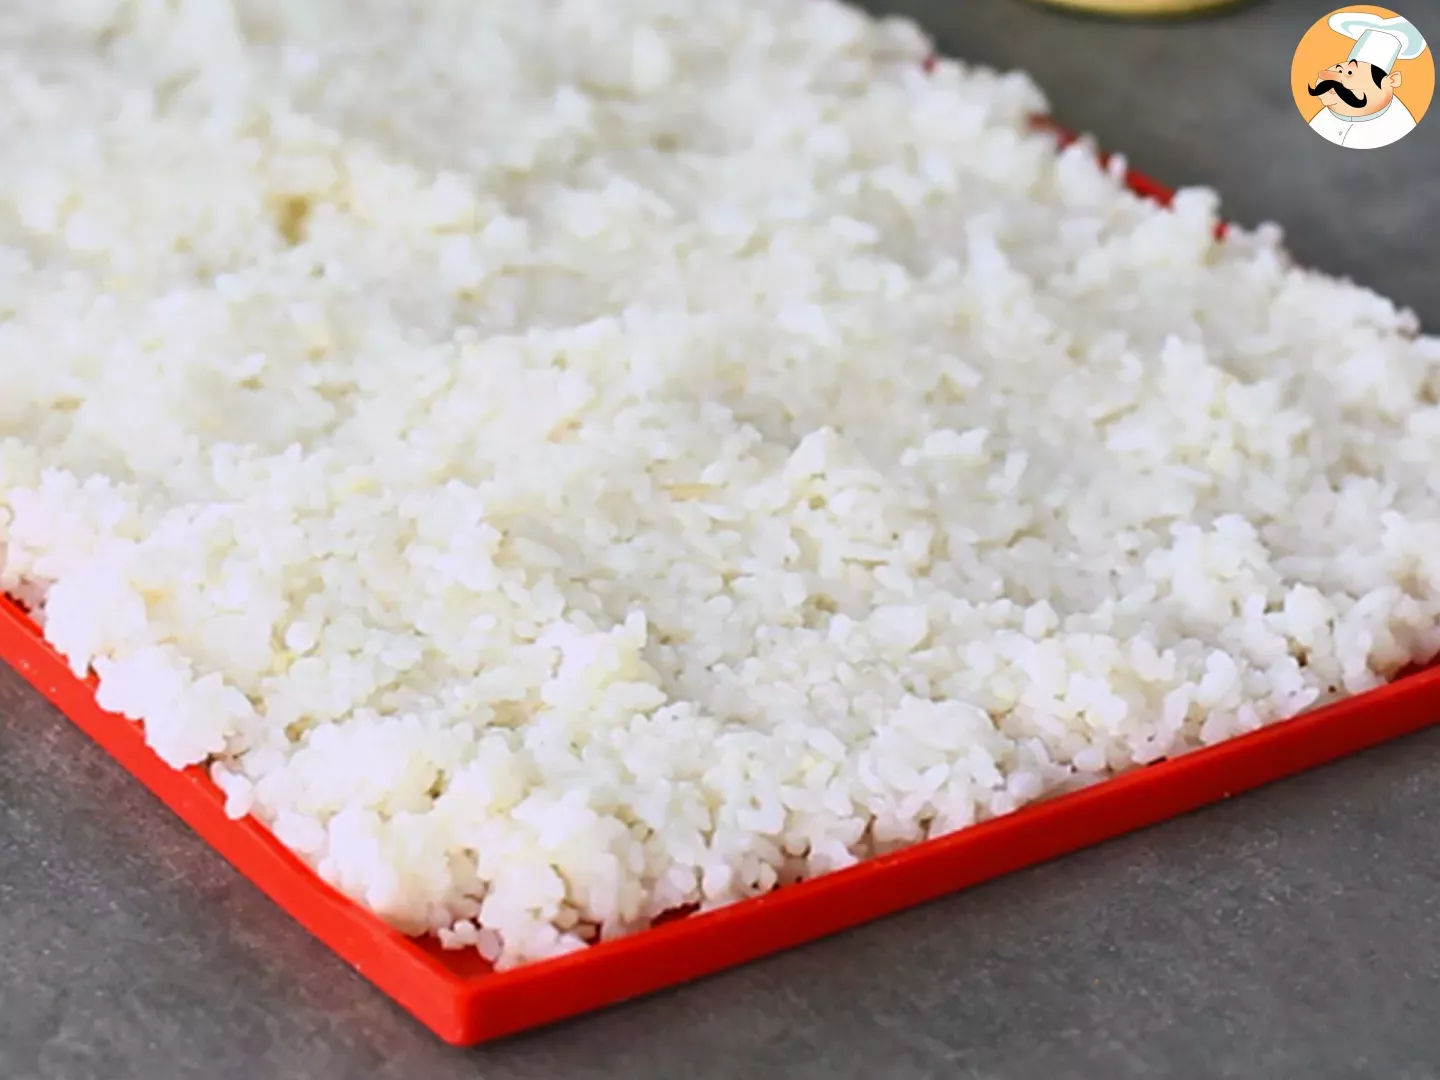 Come preparare il riso per sushi: il procedimento spiegato passo a passo -  Ricetta Petitchef